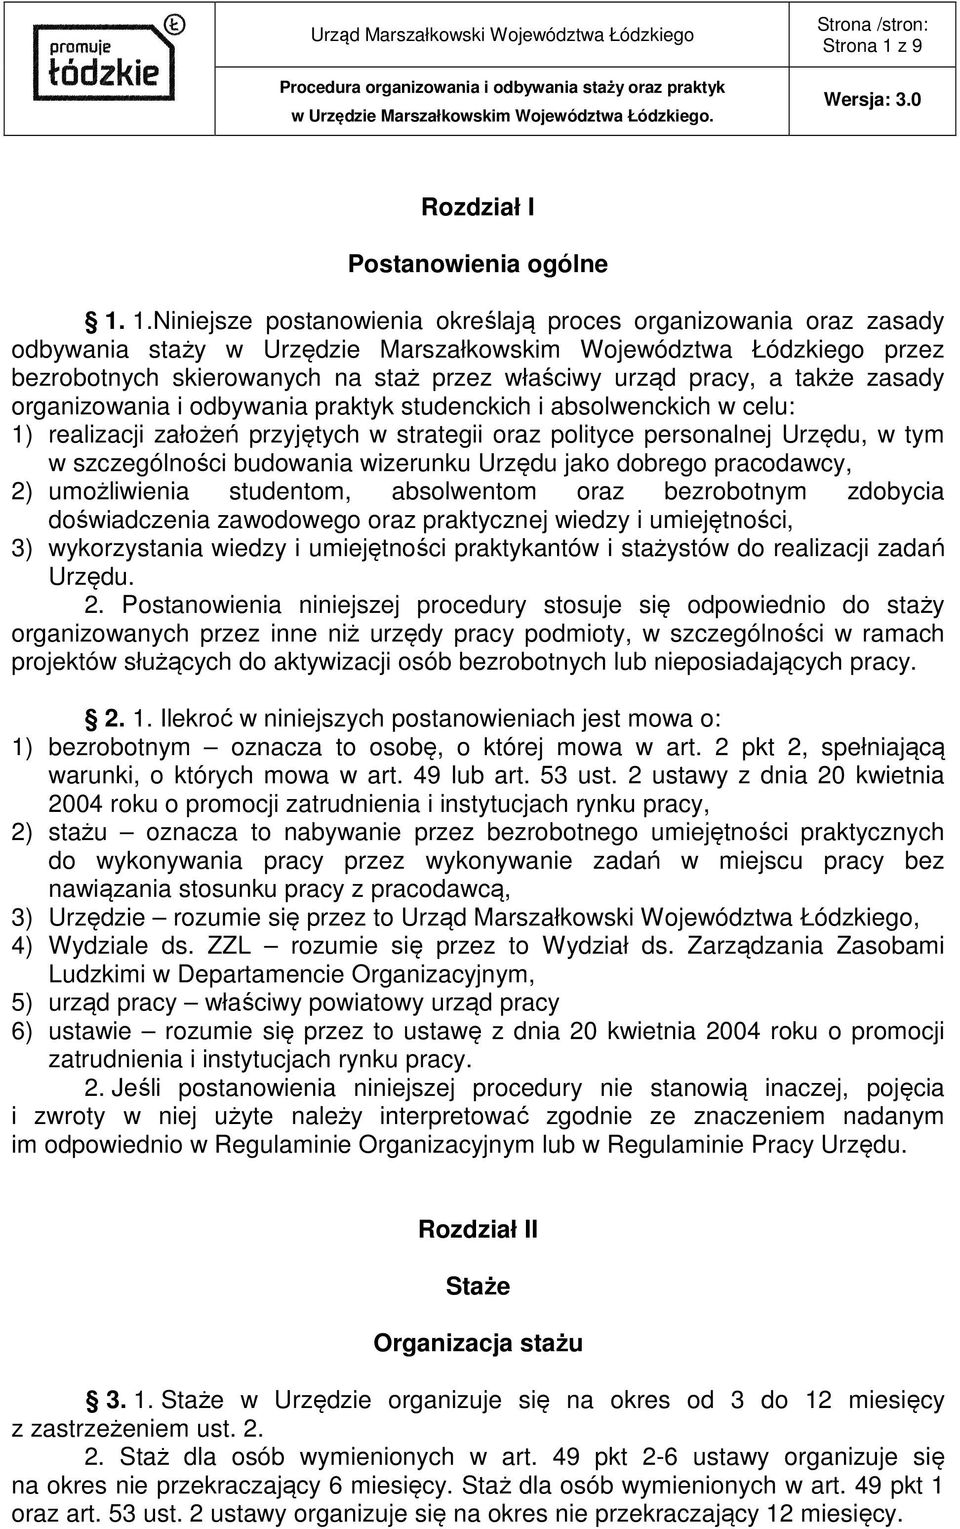 1.Niniejsze postanowienia określają proces organizowania oraz zasady odbywania staży w Urzędzie Marszałkowskim Województwa Łódzkiego przez bezrobotnych skierowanych na staż przez właściwy urząd